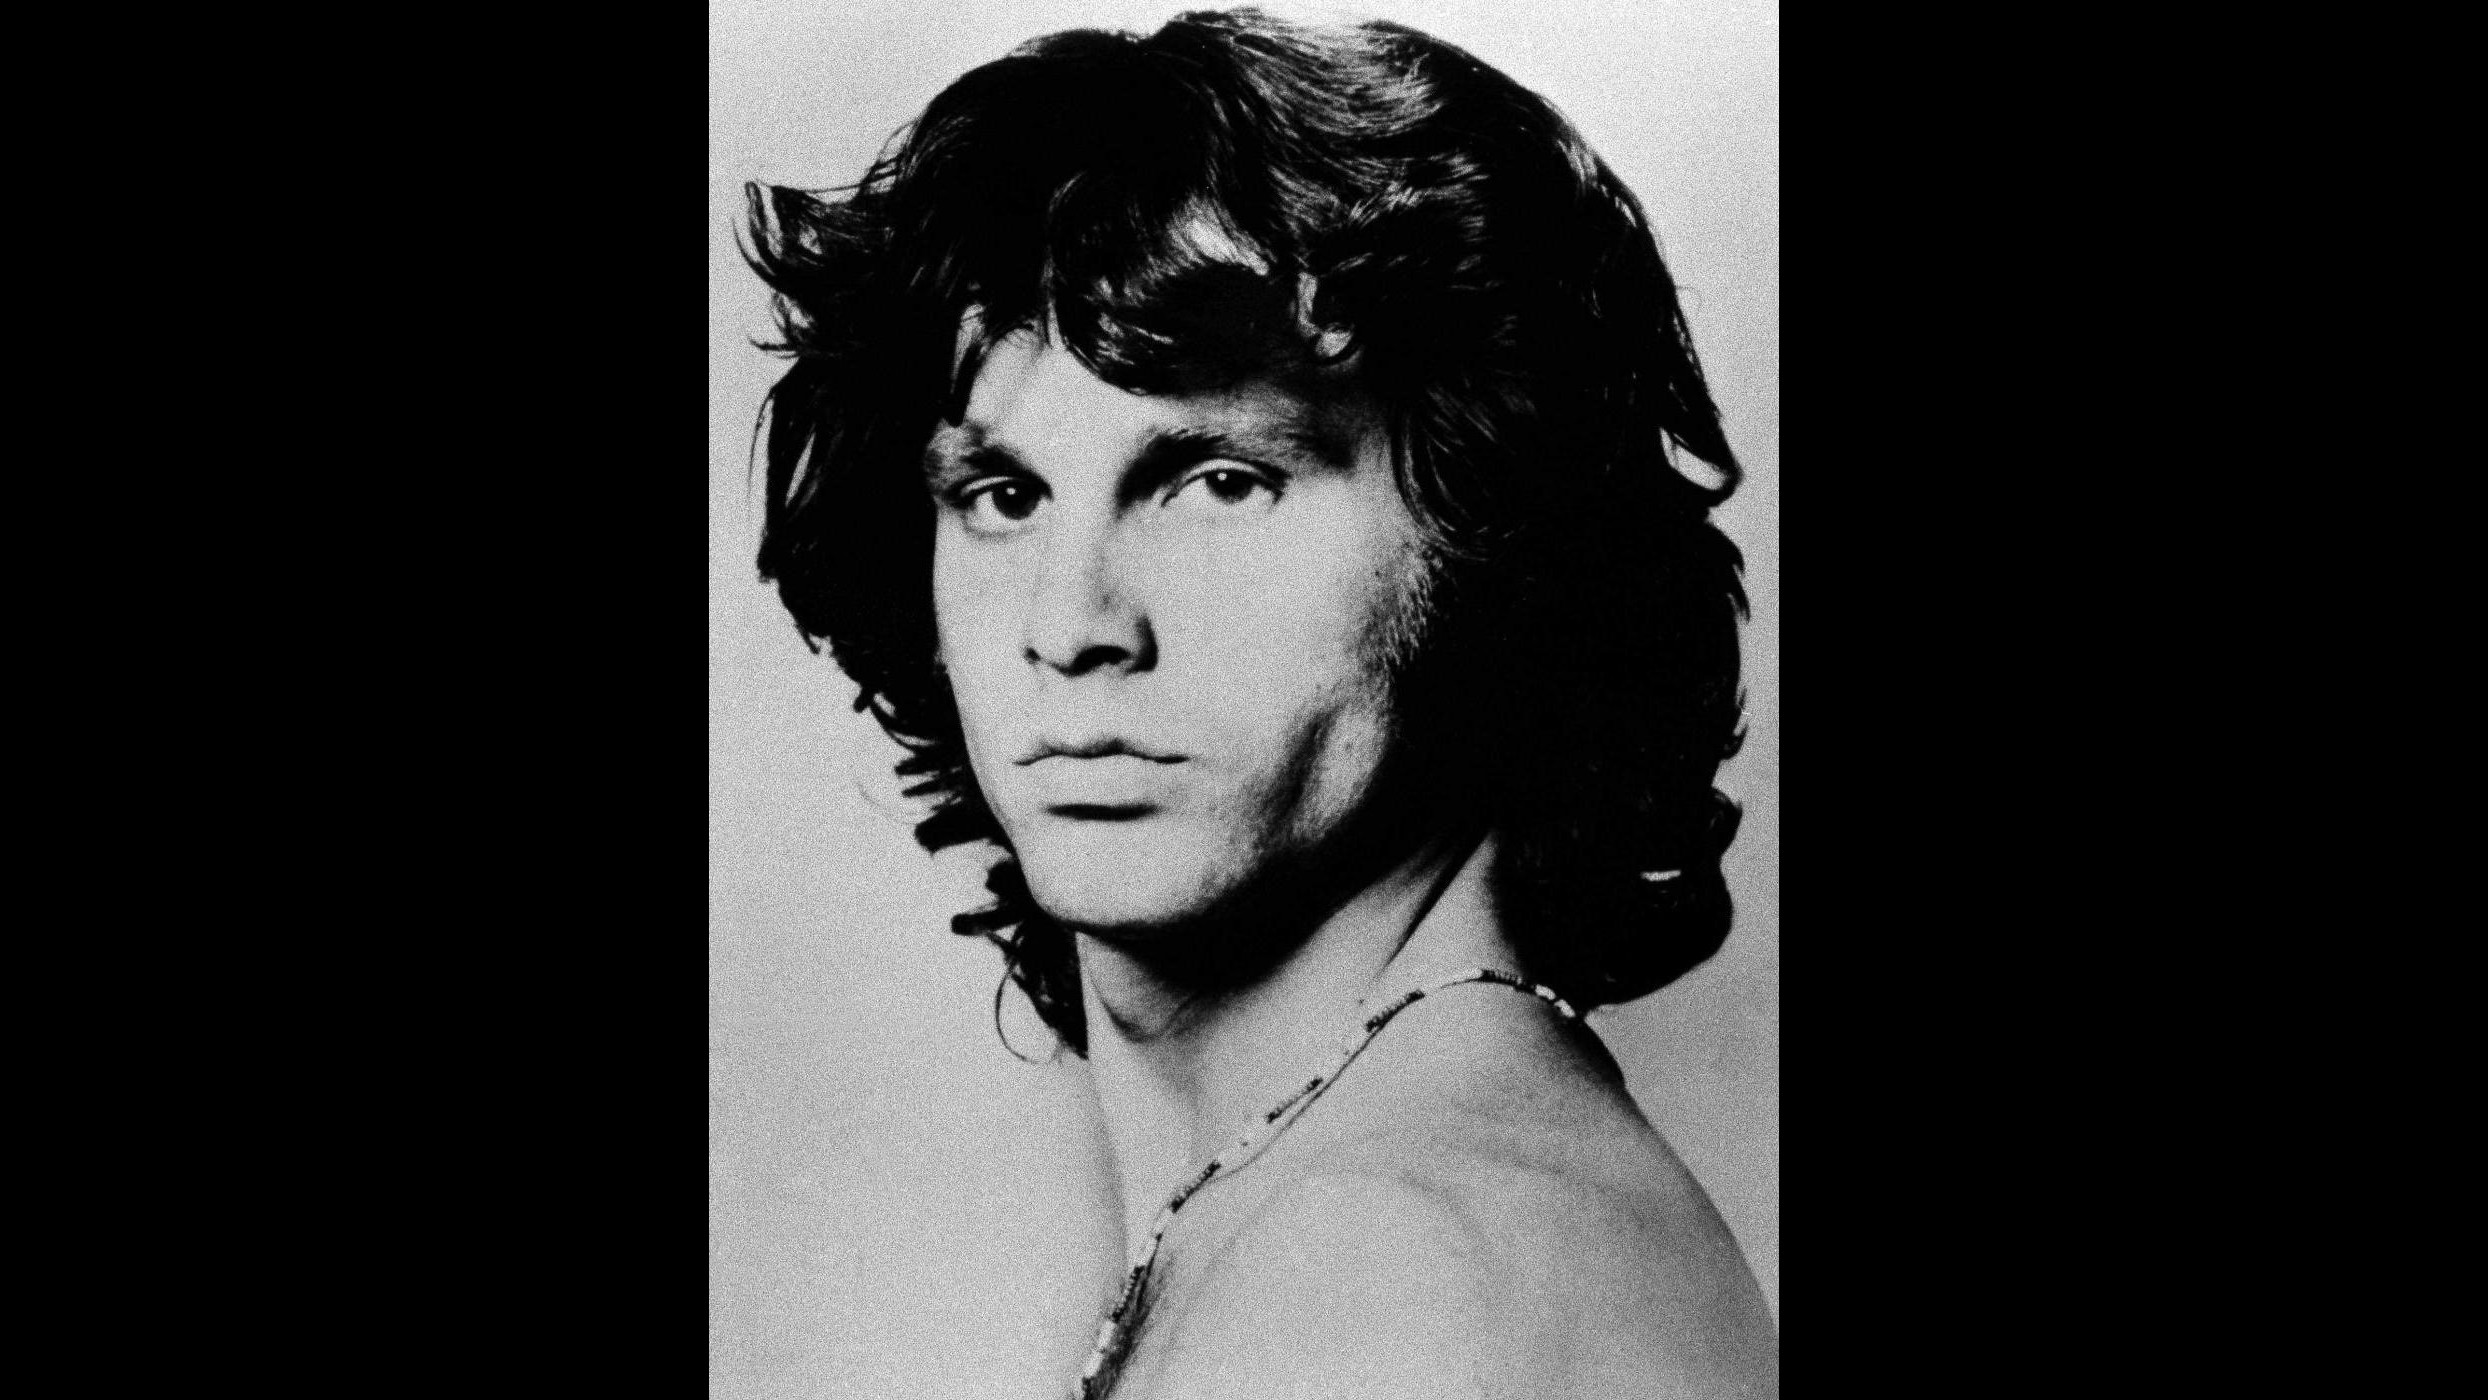 Scoperto brano ineditio dei Doors con Jim Morrison, l’anteprima lunedì